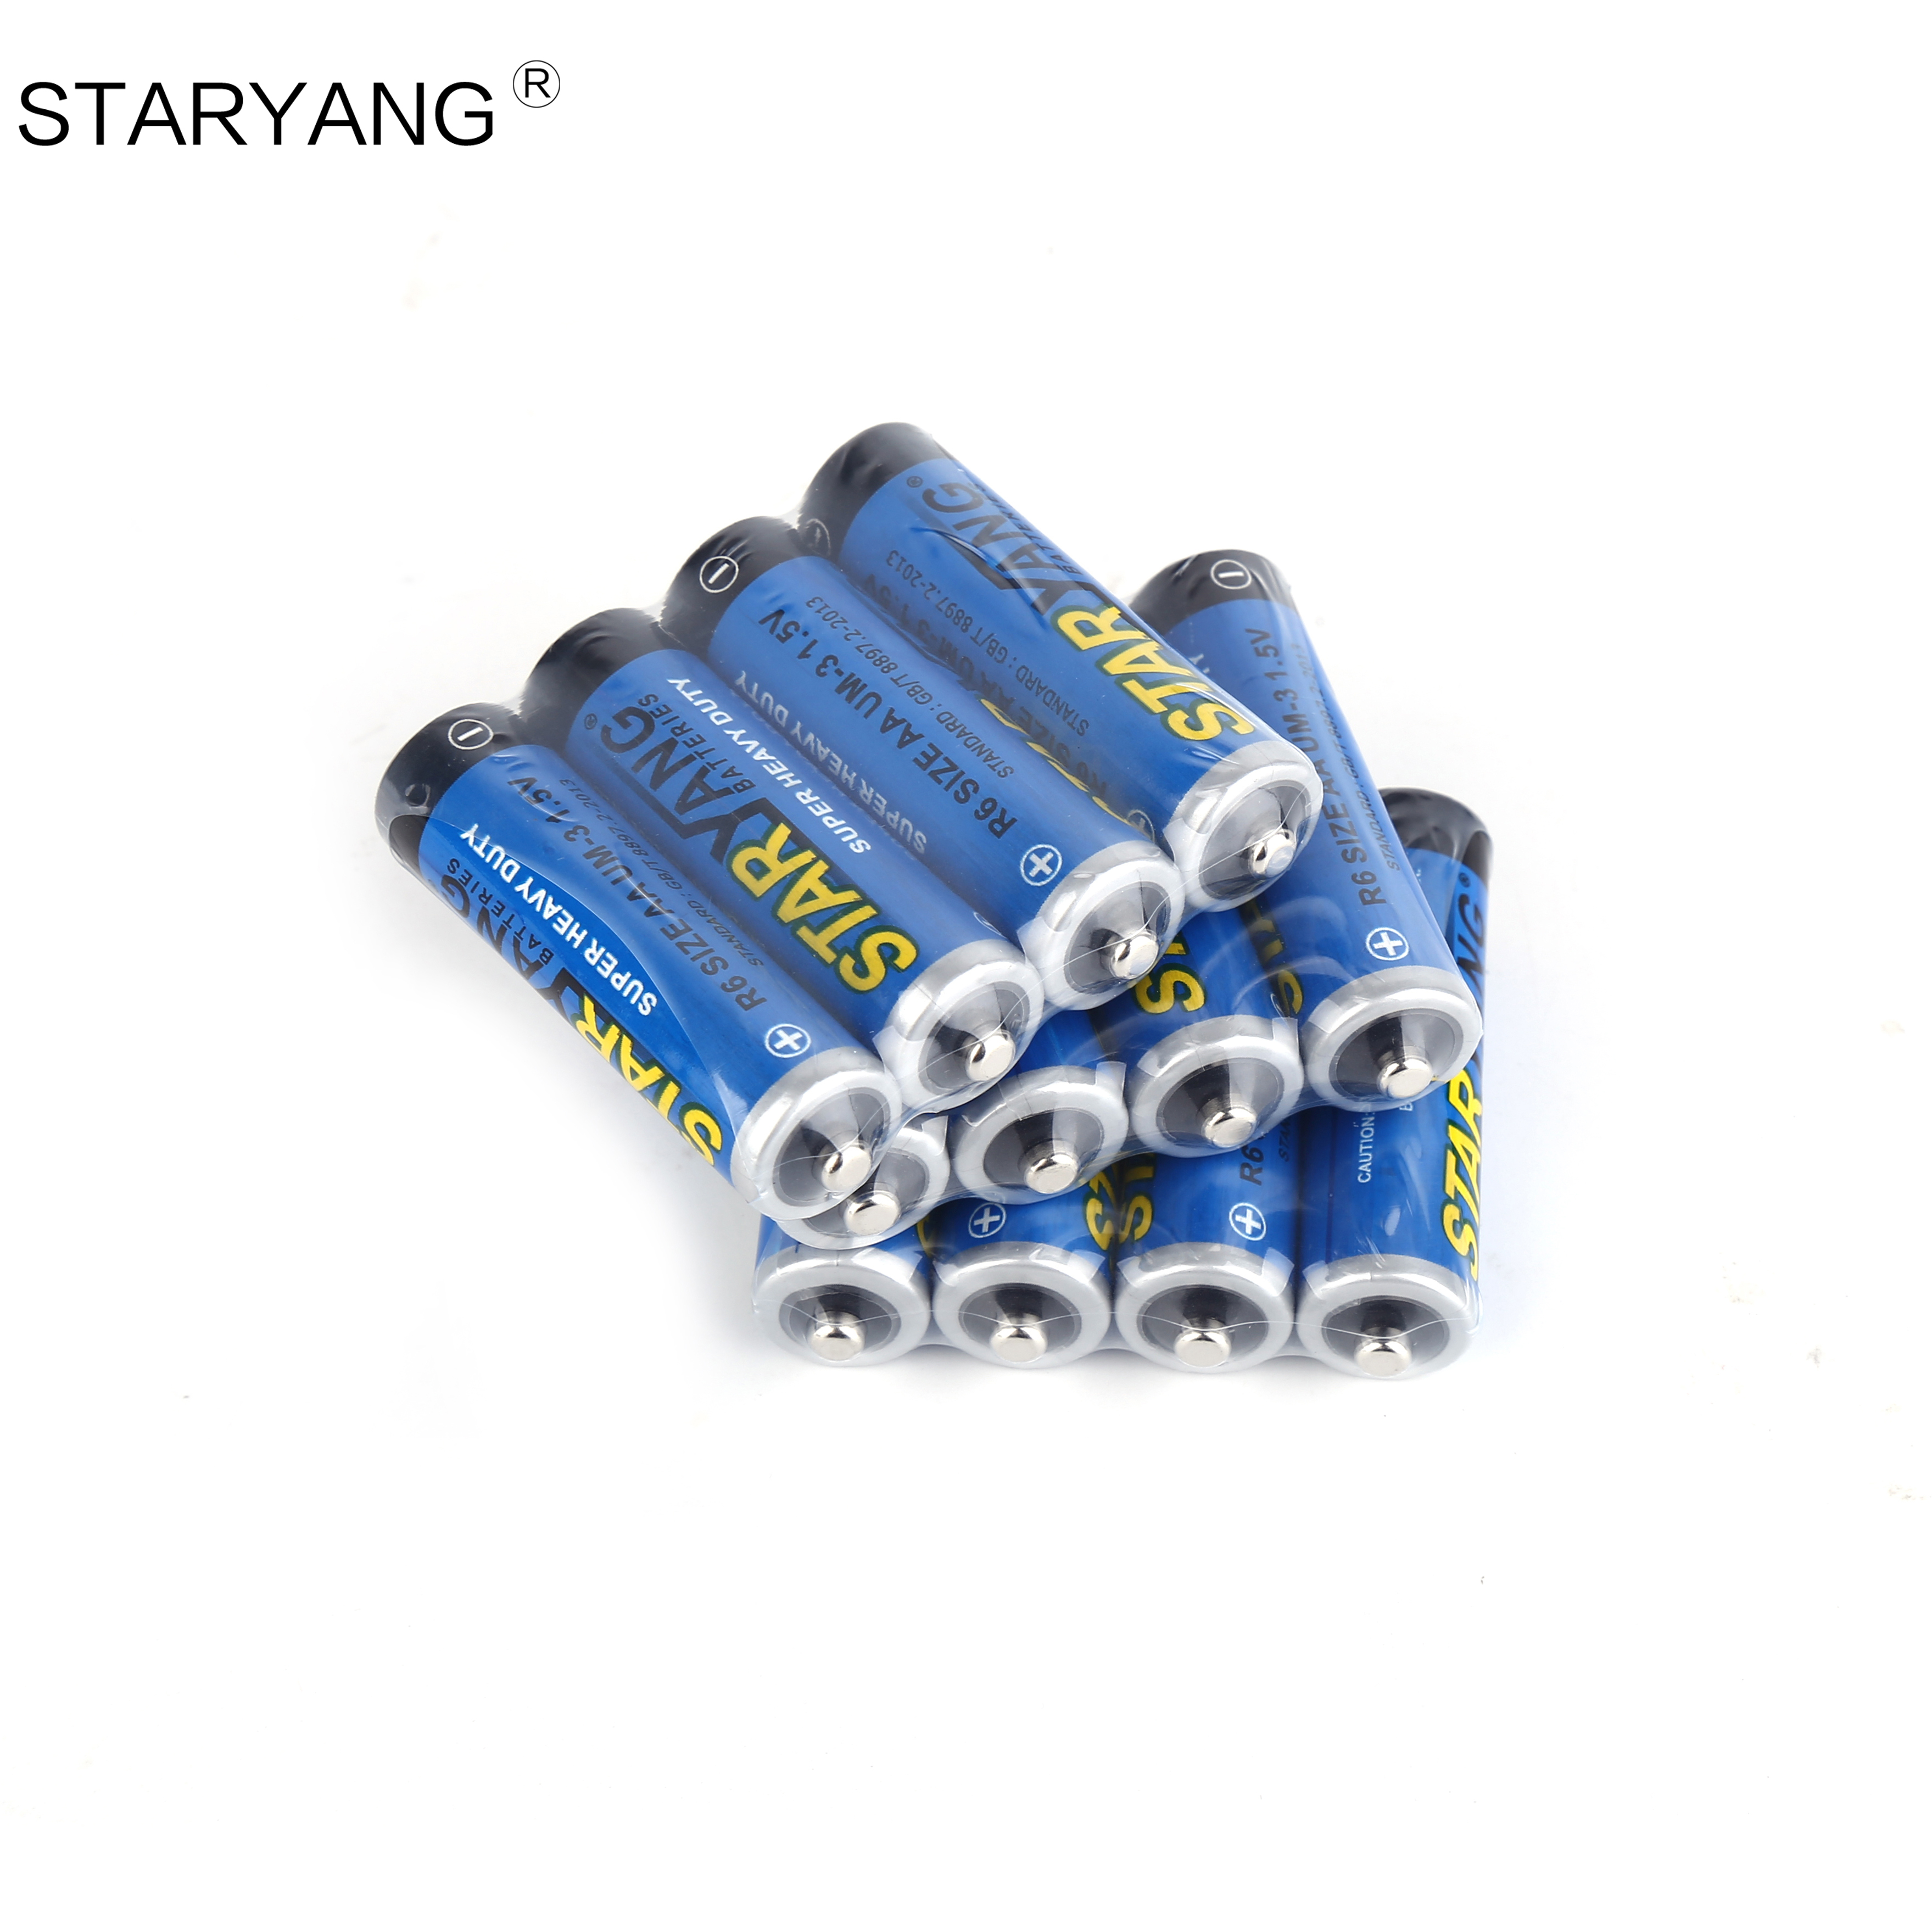 厂家低价直销STARYANG玩具电池R6干电池5号电池产品图